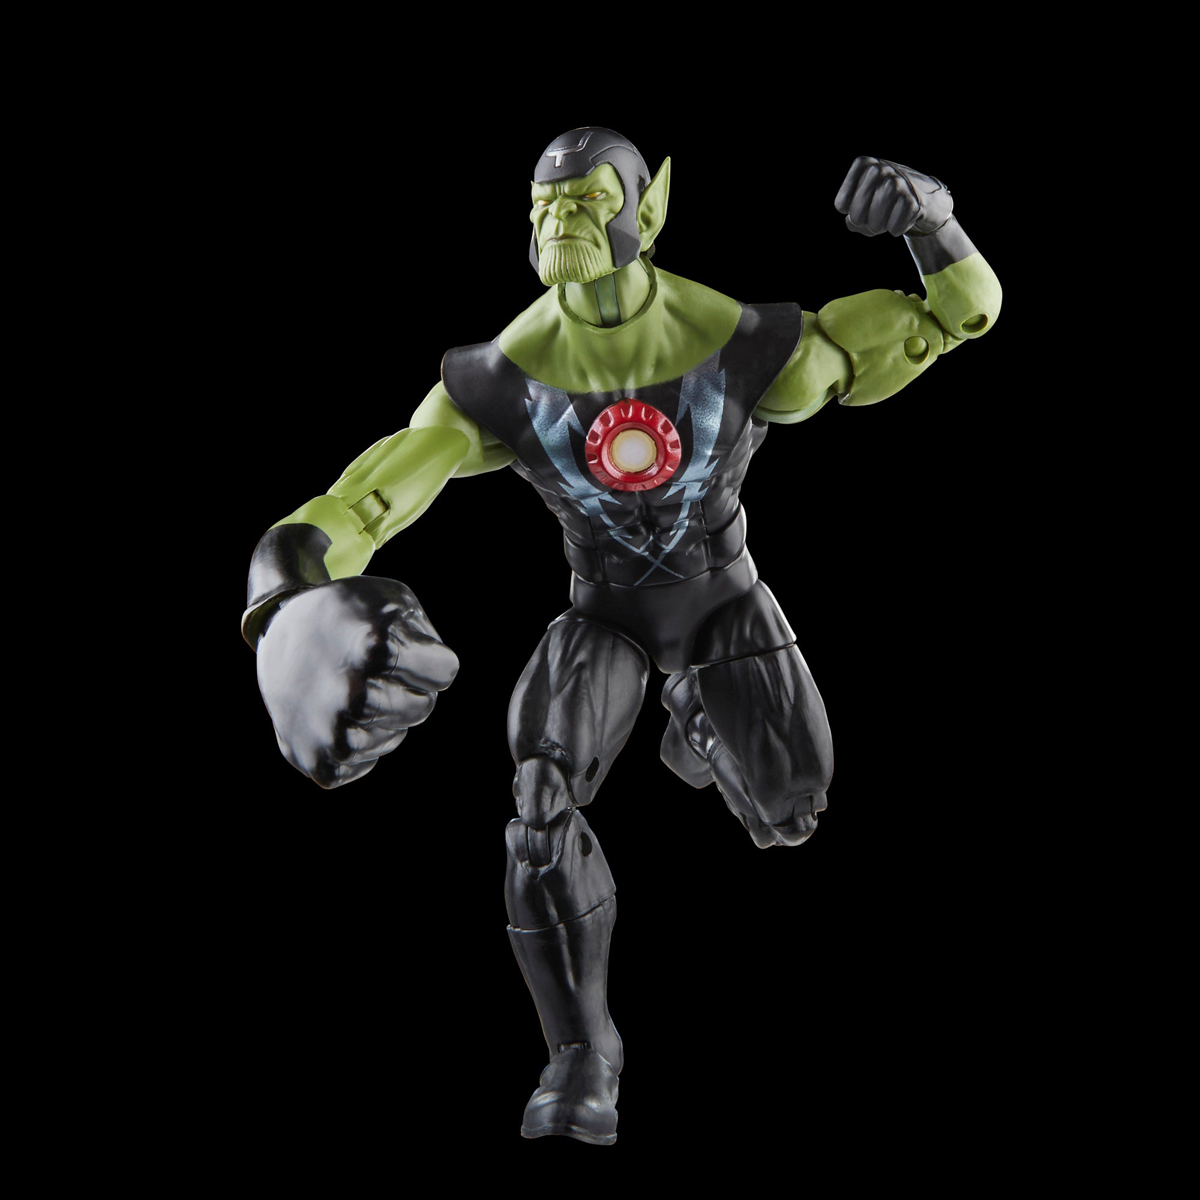 Marvel-Legends-Skrull-Queen-and-Super-Skrull-Action-Figures-10